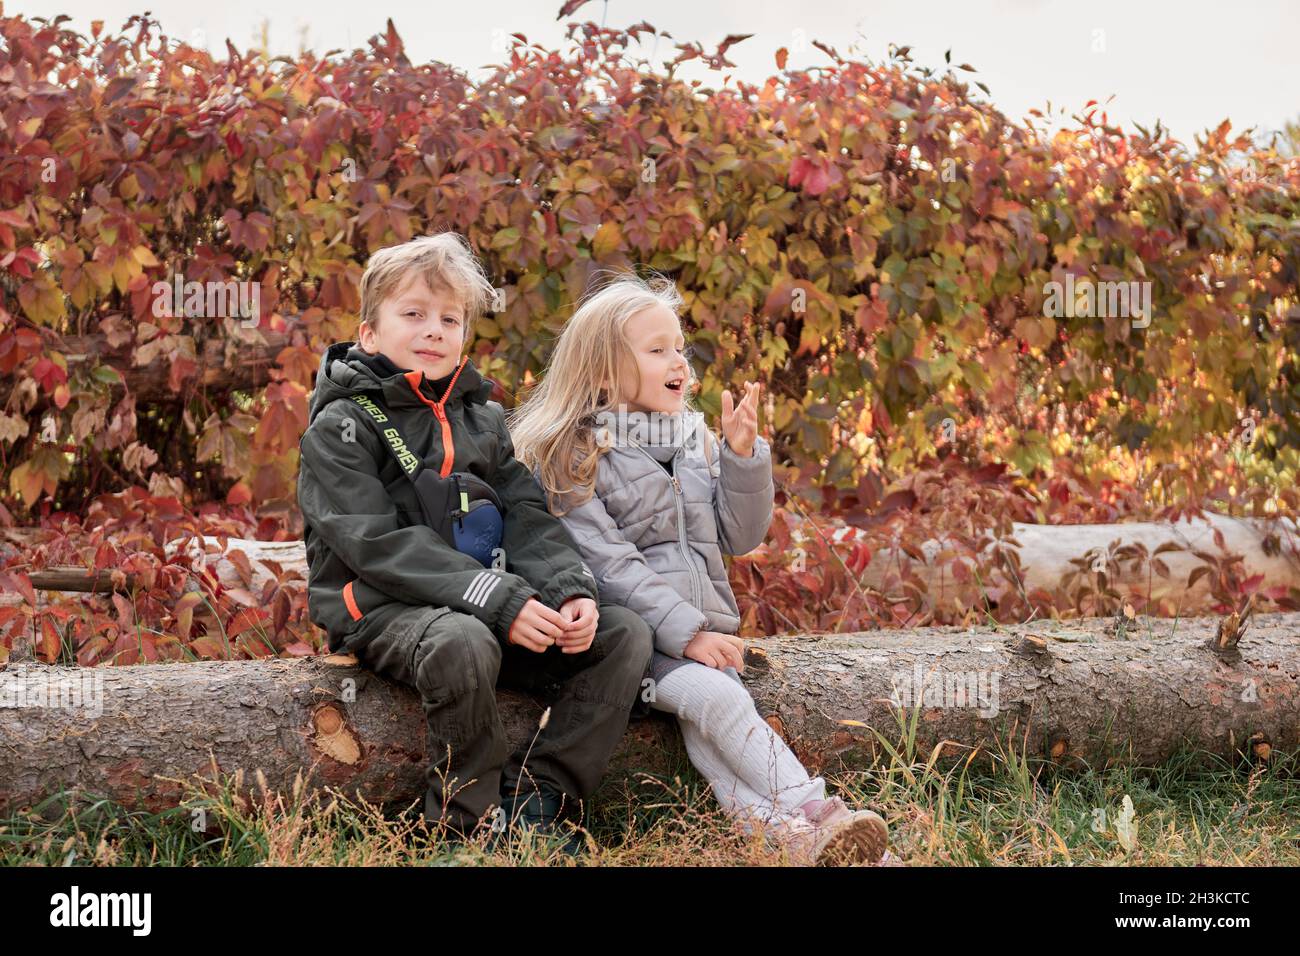 Liebende Geschwister Bruder und Schwester haben Spaß im Park mit trockenen gelben und roten Blättern. Herbstlicher Familienspaziergang. Stockfoto